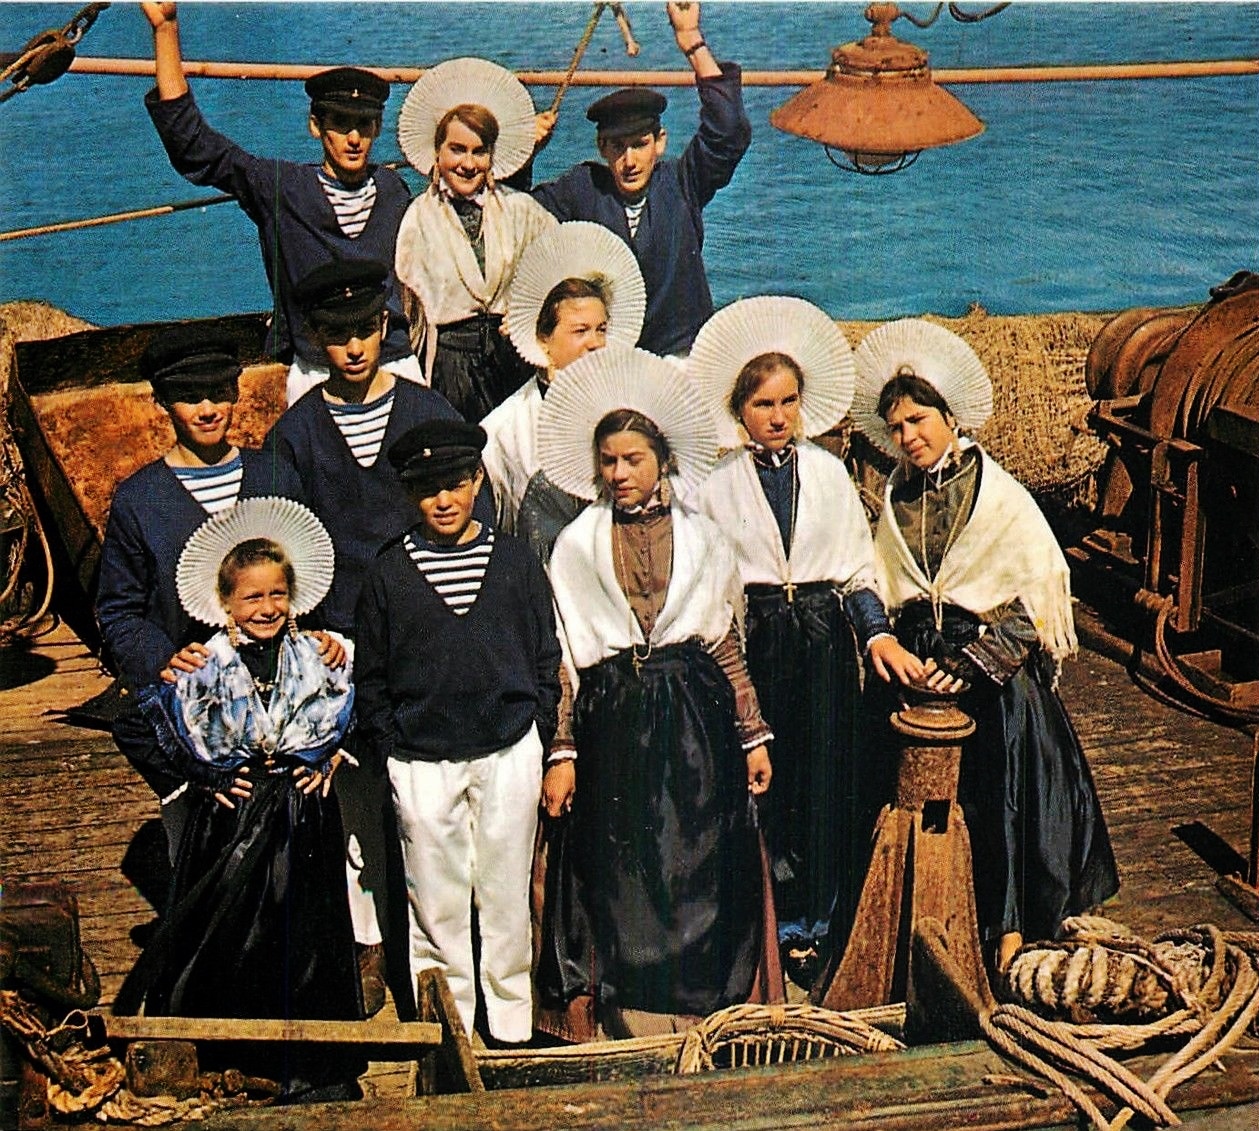 Calais groupe folklorique sur le bateau